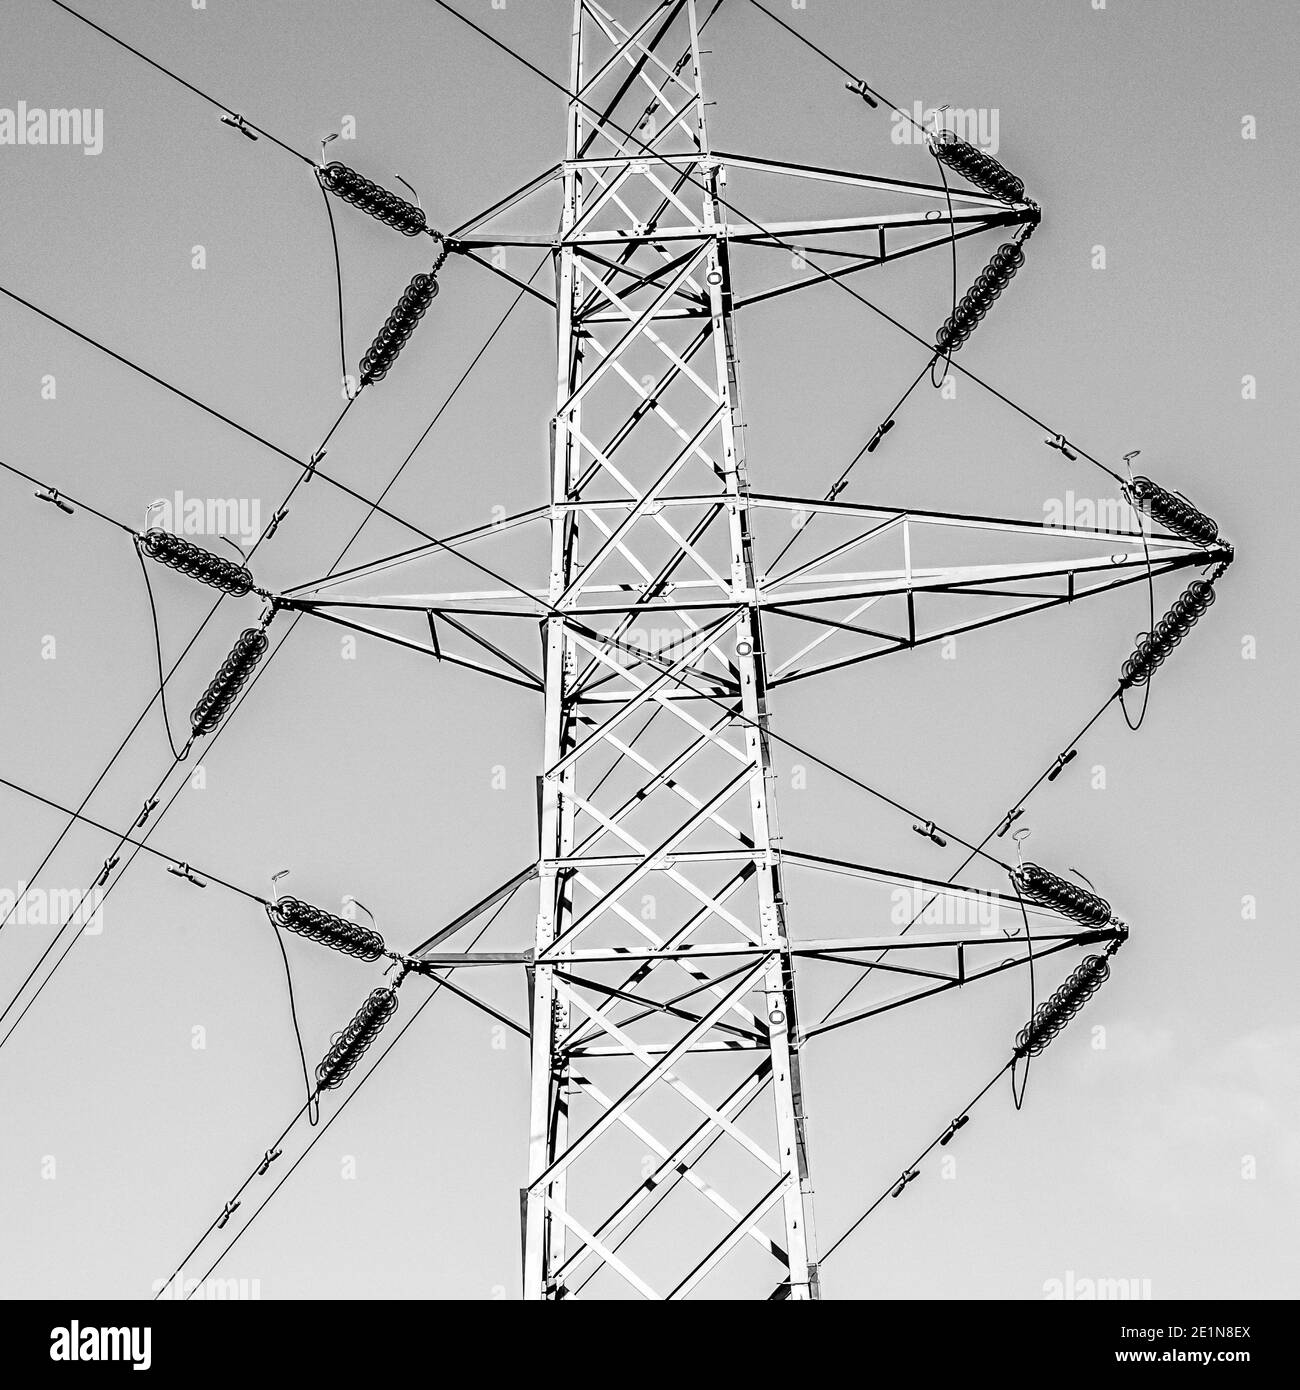 Strommasten und Freileitungen der Übertragung und Verteilung Netzwerk Stockfoto